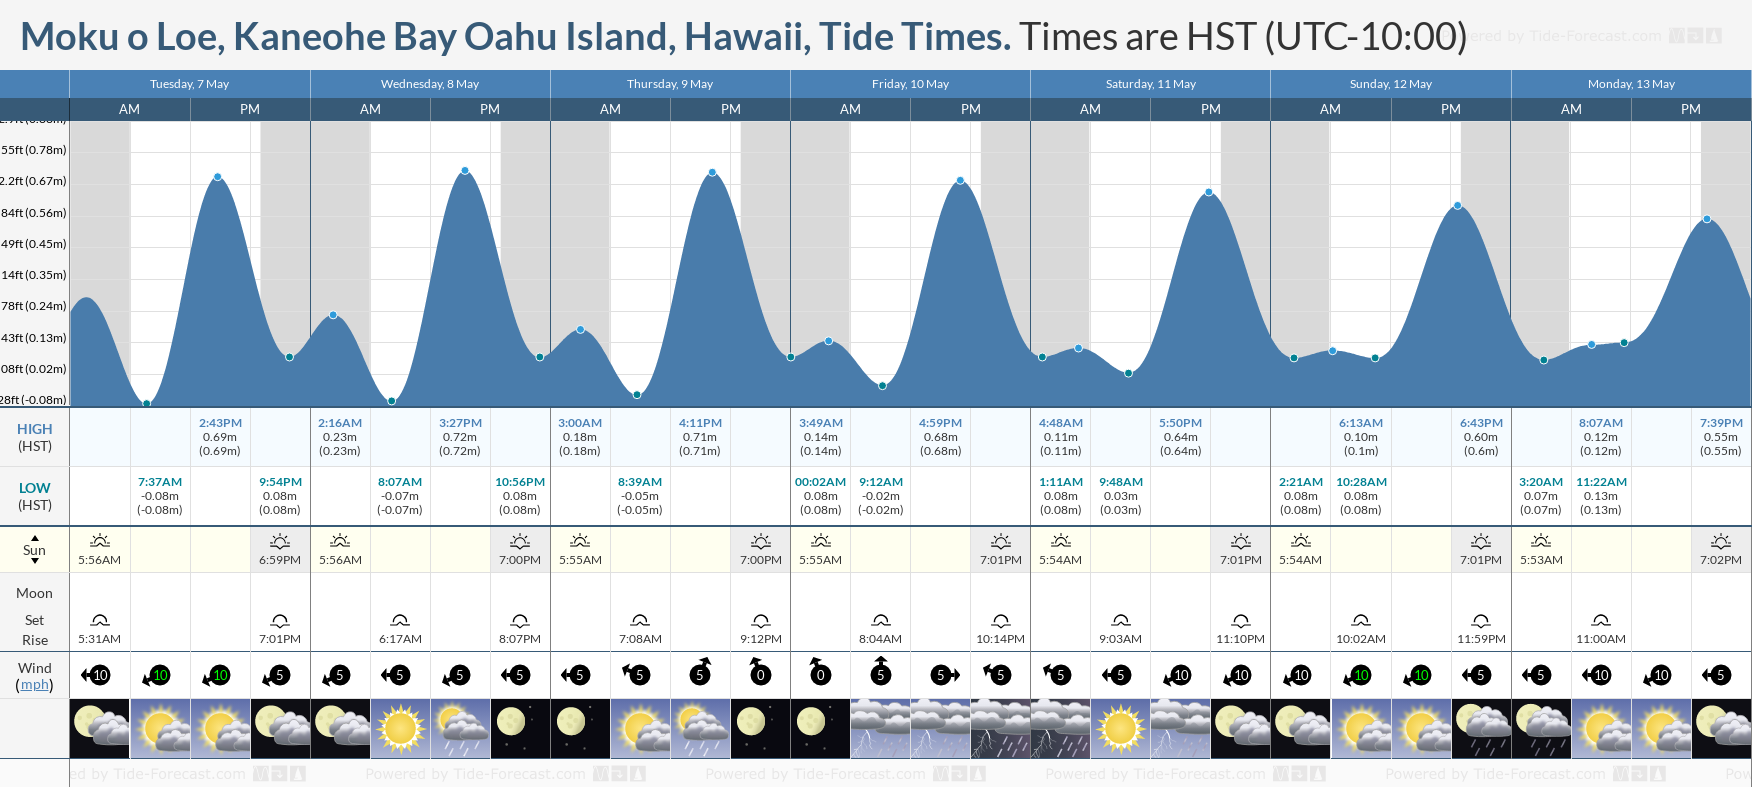 Moku o Loe, Kaneohe Bay Oahu Island, Hawaii Tide Chart including high and low tide times for the next 7 days